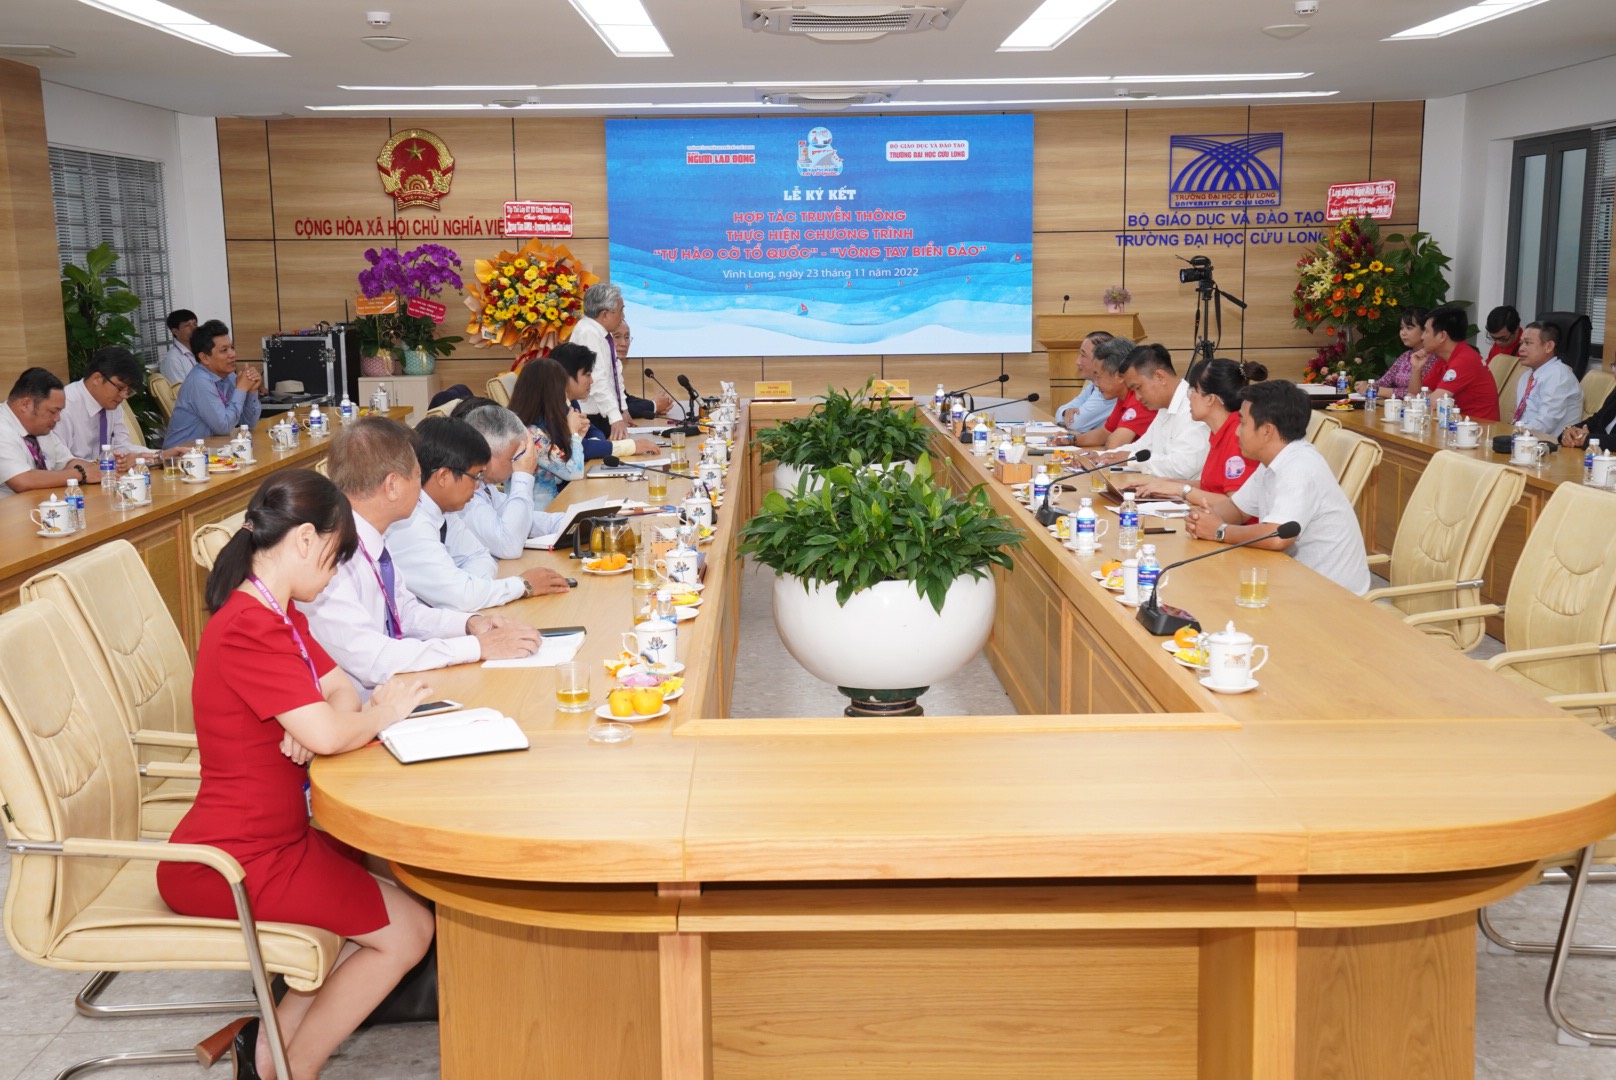 Báo Người Lao Động hợp tác với Trường ĐH Cửu Long triển khai 2 chương trình lớn - Ảnh 6.